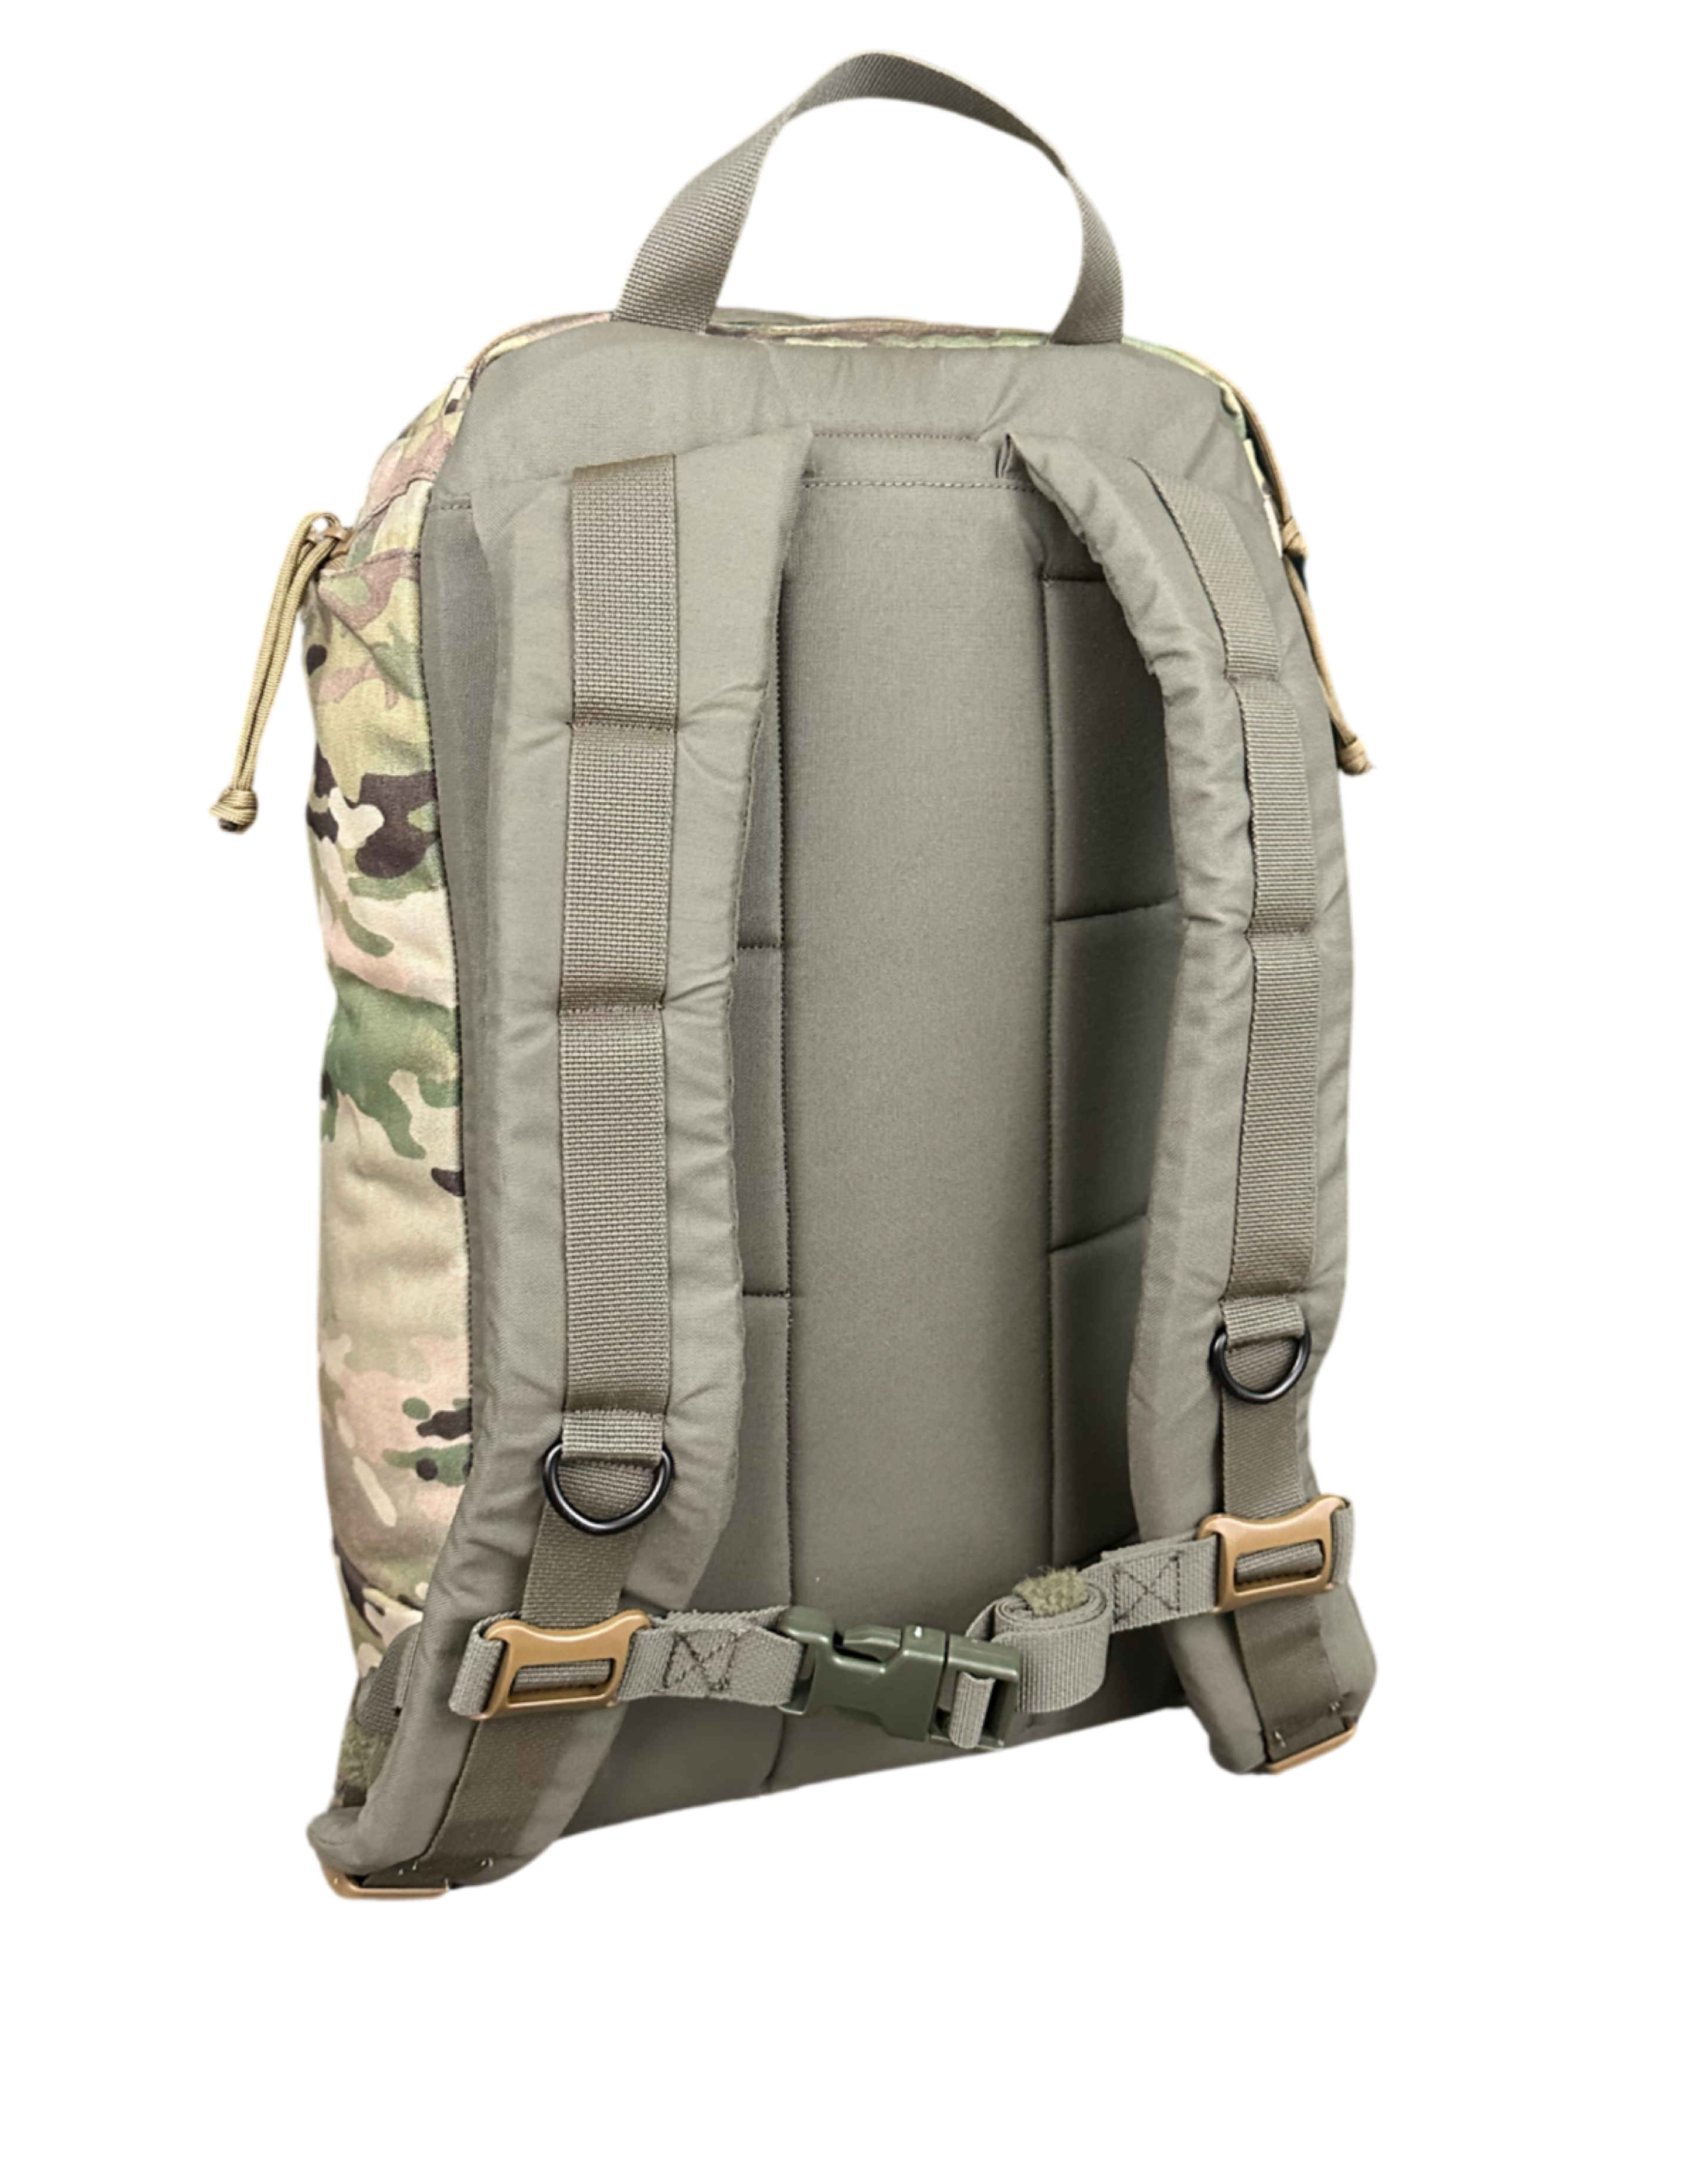 ruckmule rmg ace day pack backpack shoulder straps back panel